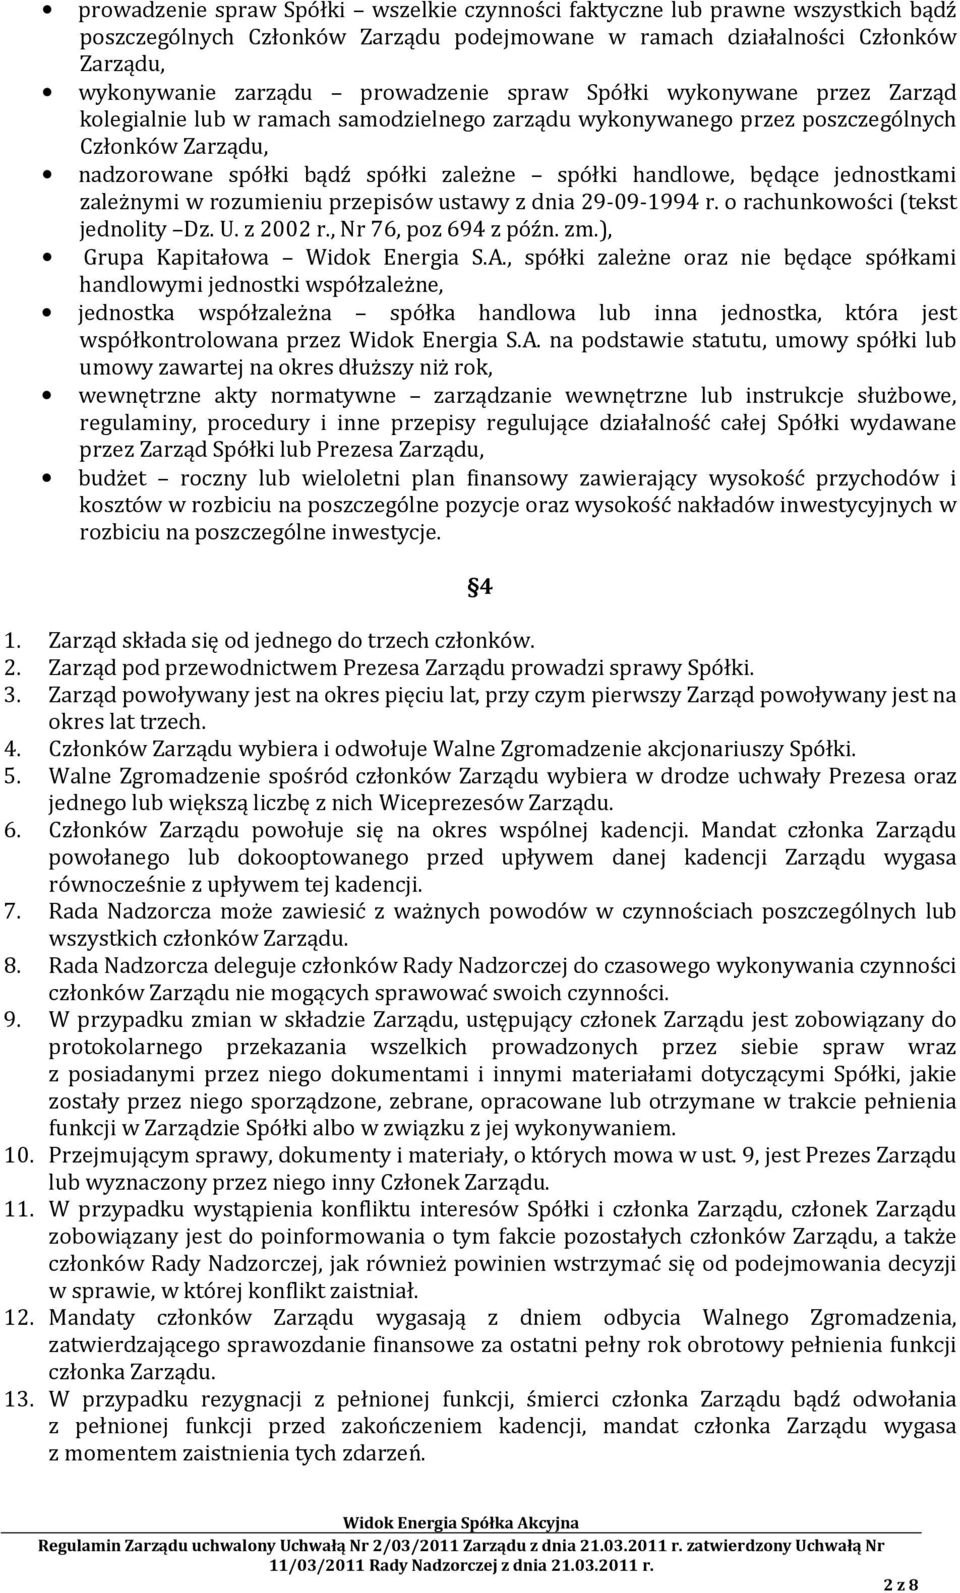 jednostkami zależnymi w rozumieniu przepisów ustawy z dnia 29-09-1994 r. o rachunkowości (tekst jednolity Dz. U. z 2002 r., Nr 76, poz 694 z późn. zm.), Grupa Kapitałowa Widok Energia S.A.